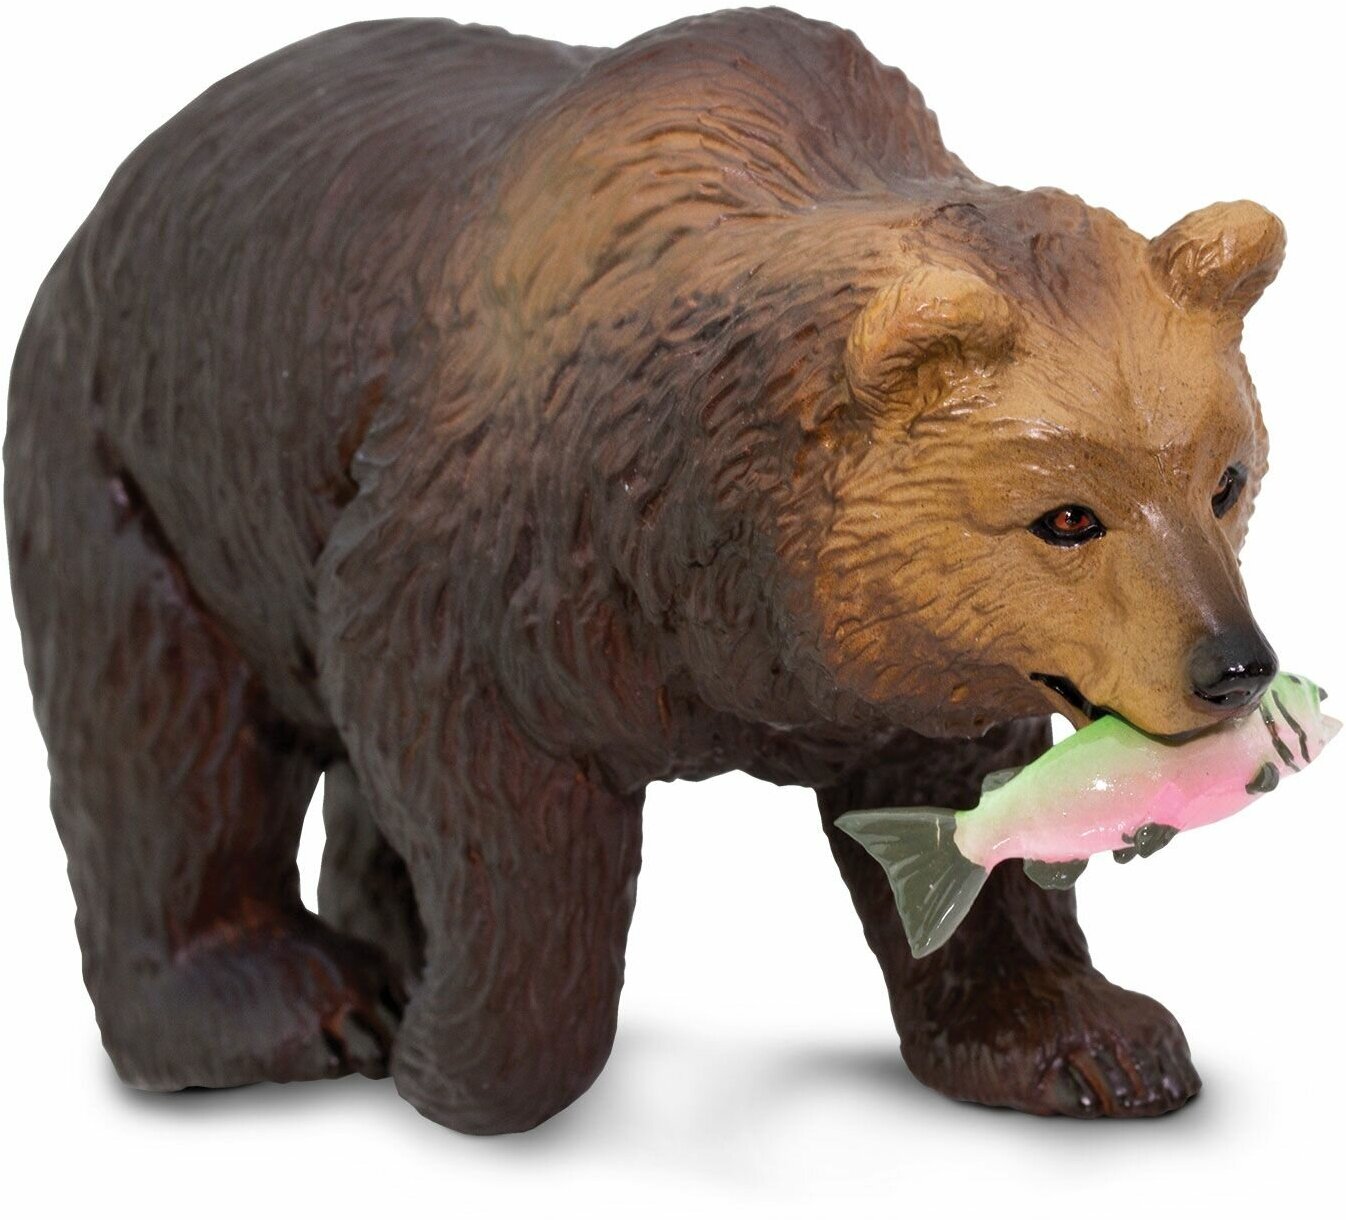 Фигурка медведя Гризли животные Safari Ltd, для детей, игрушка коллекционная, 281929